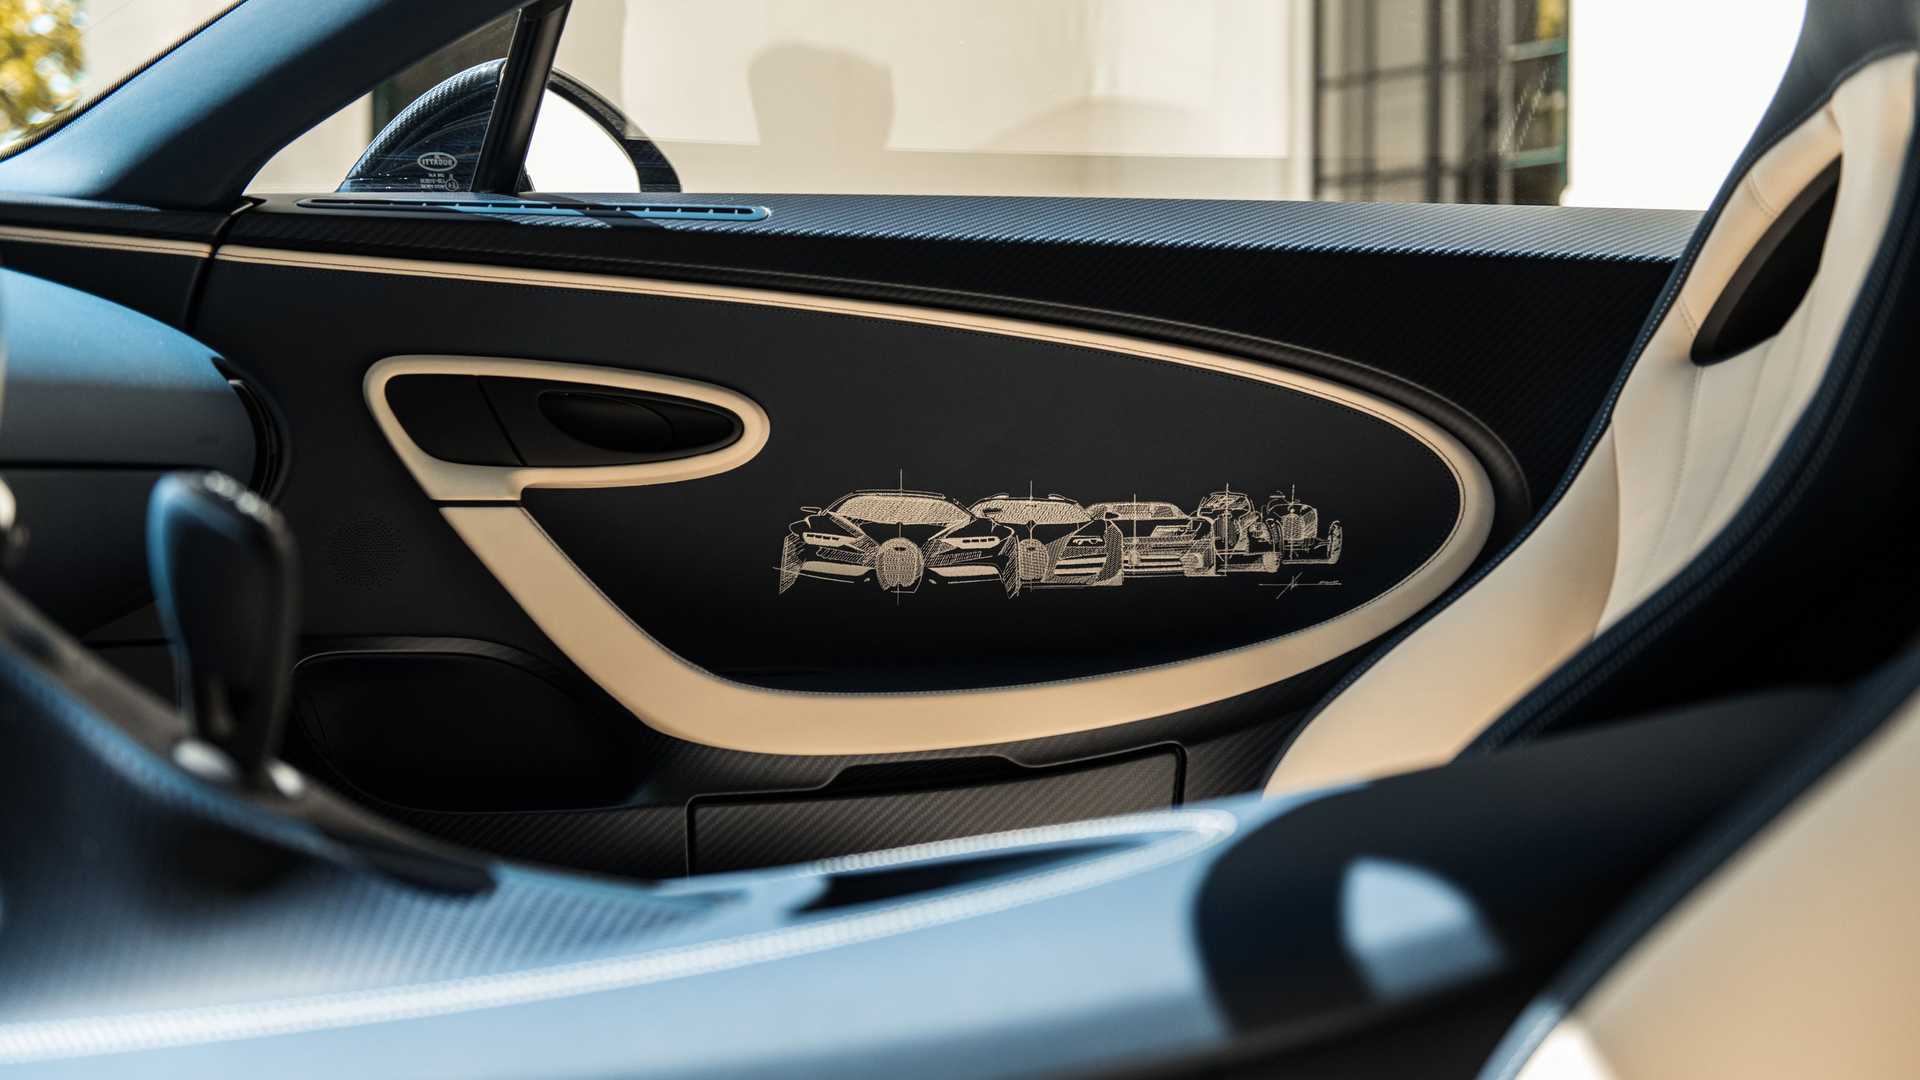 Interior Bugatti Chiron